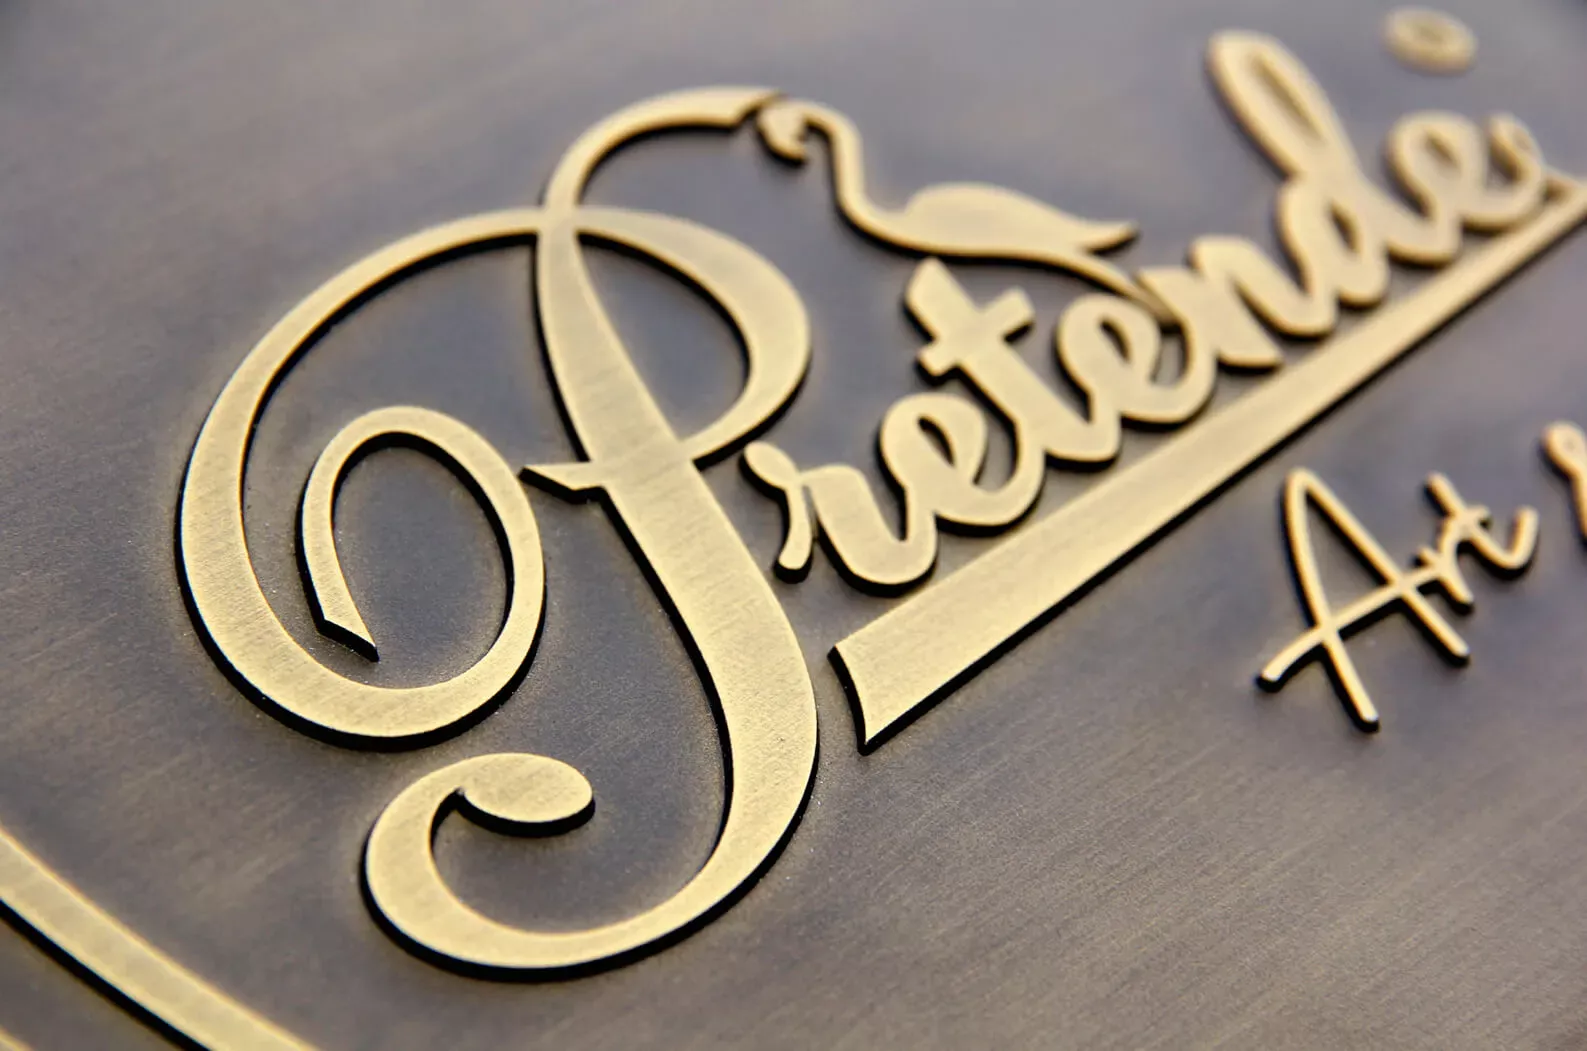 Gegoten plaquette Pretende - 3D gegoten bronzen plaquette met Pretende logo